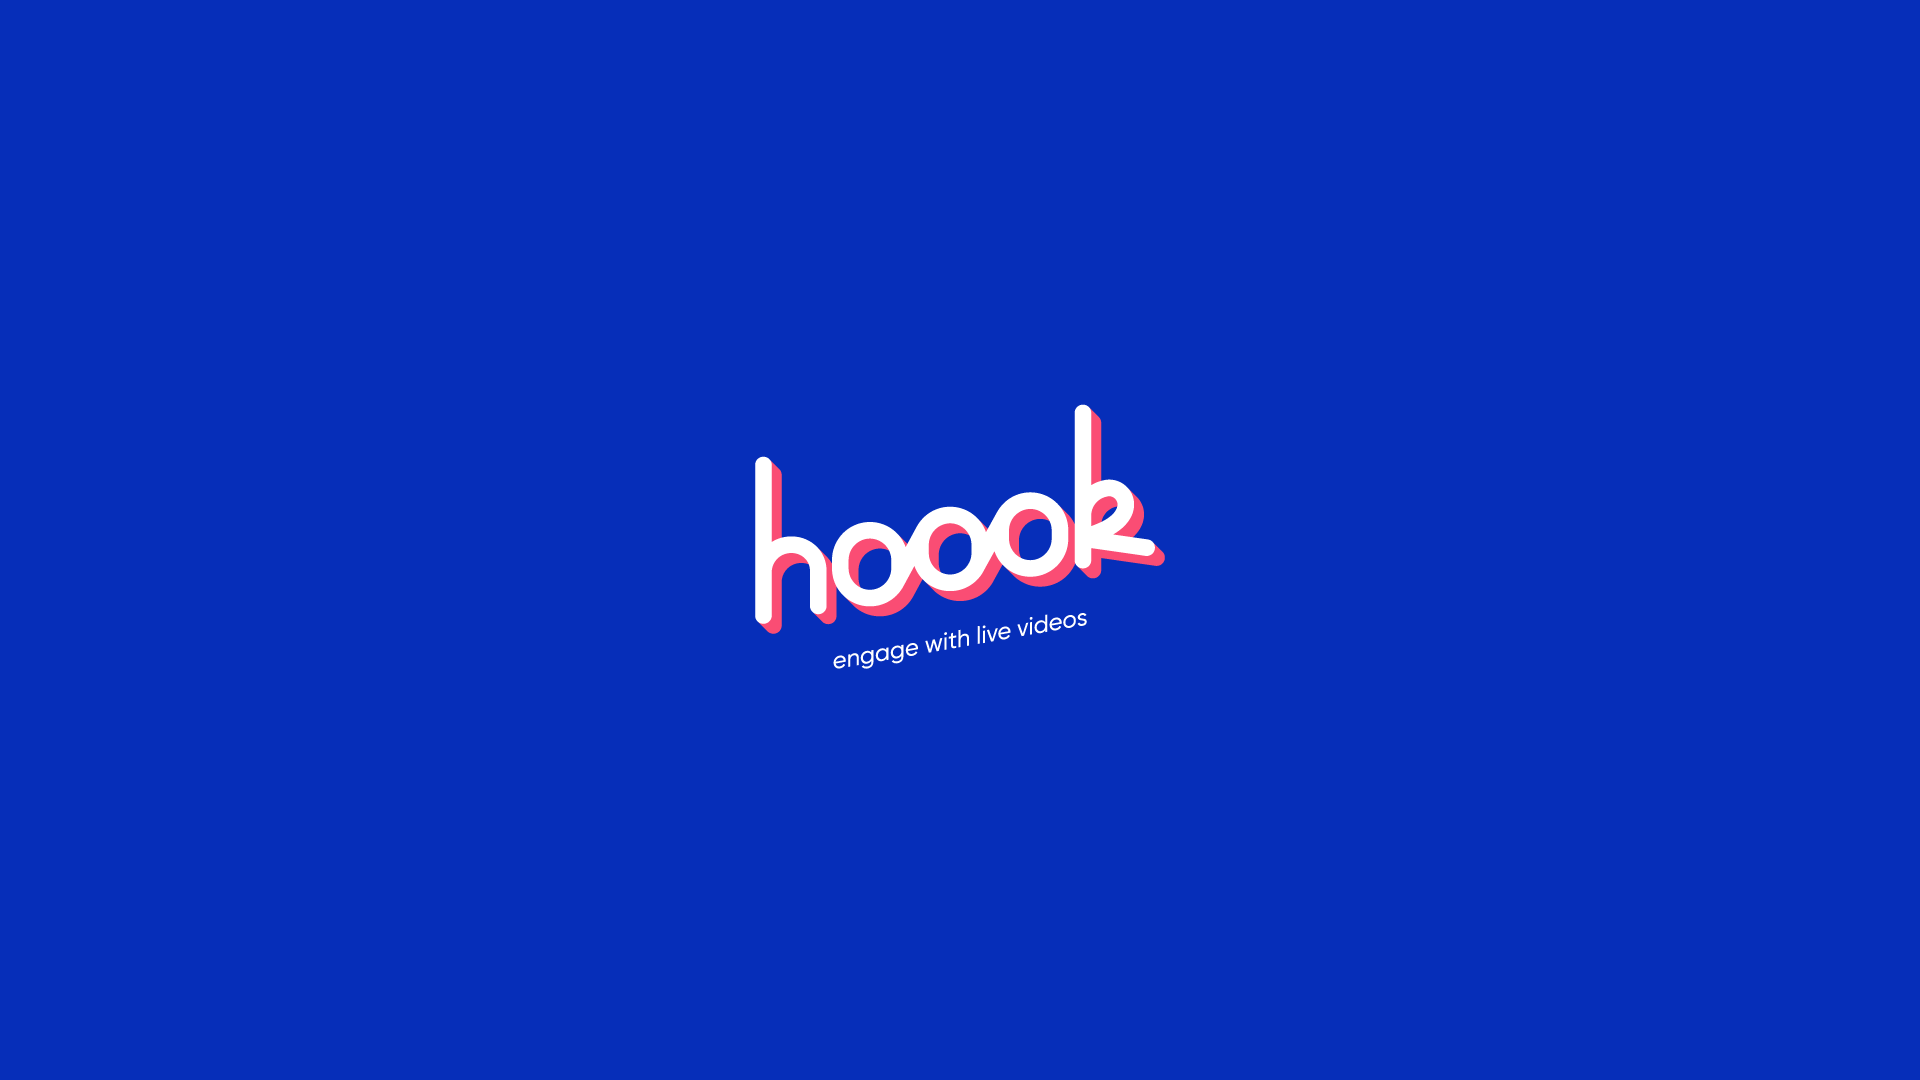 Hoook